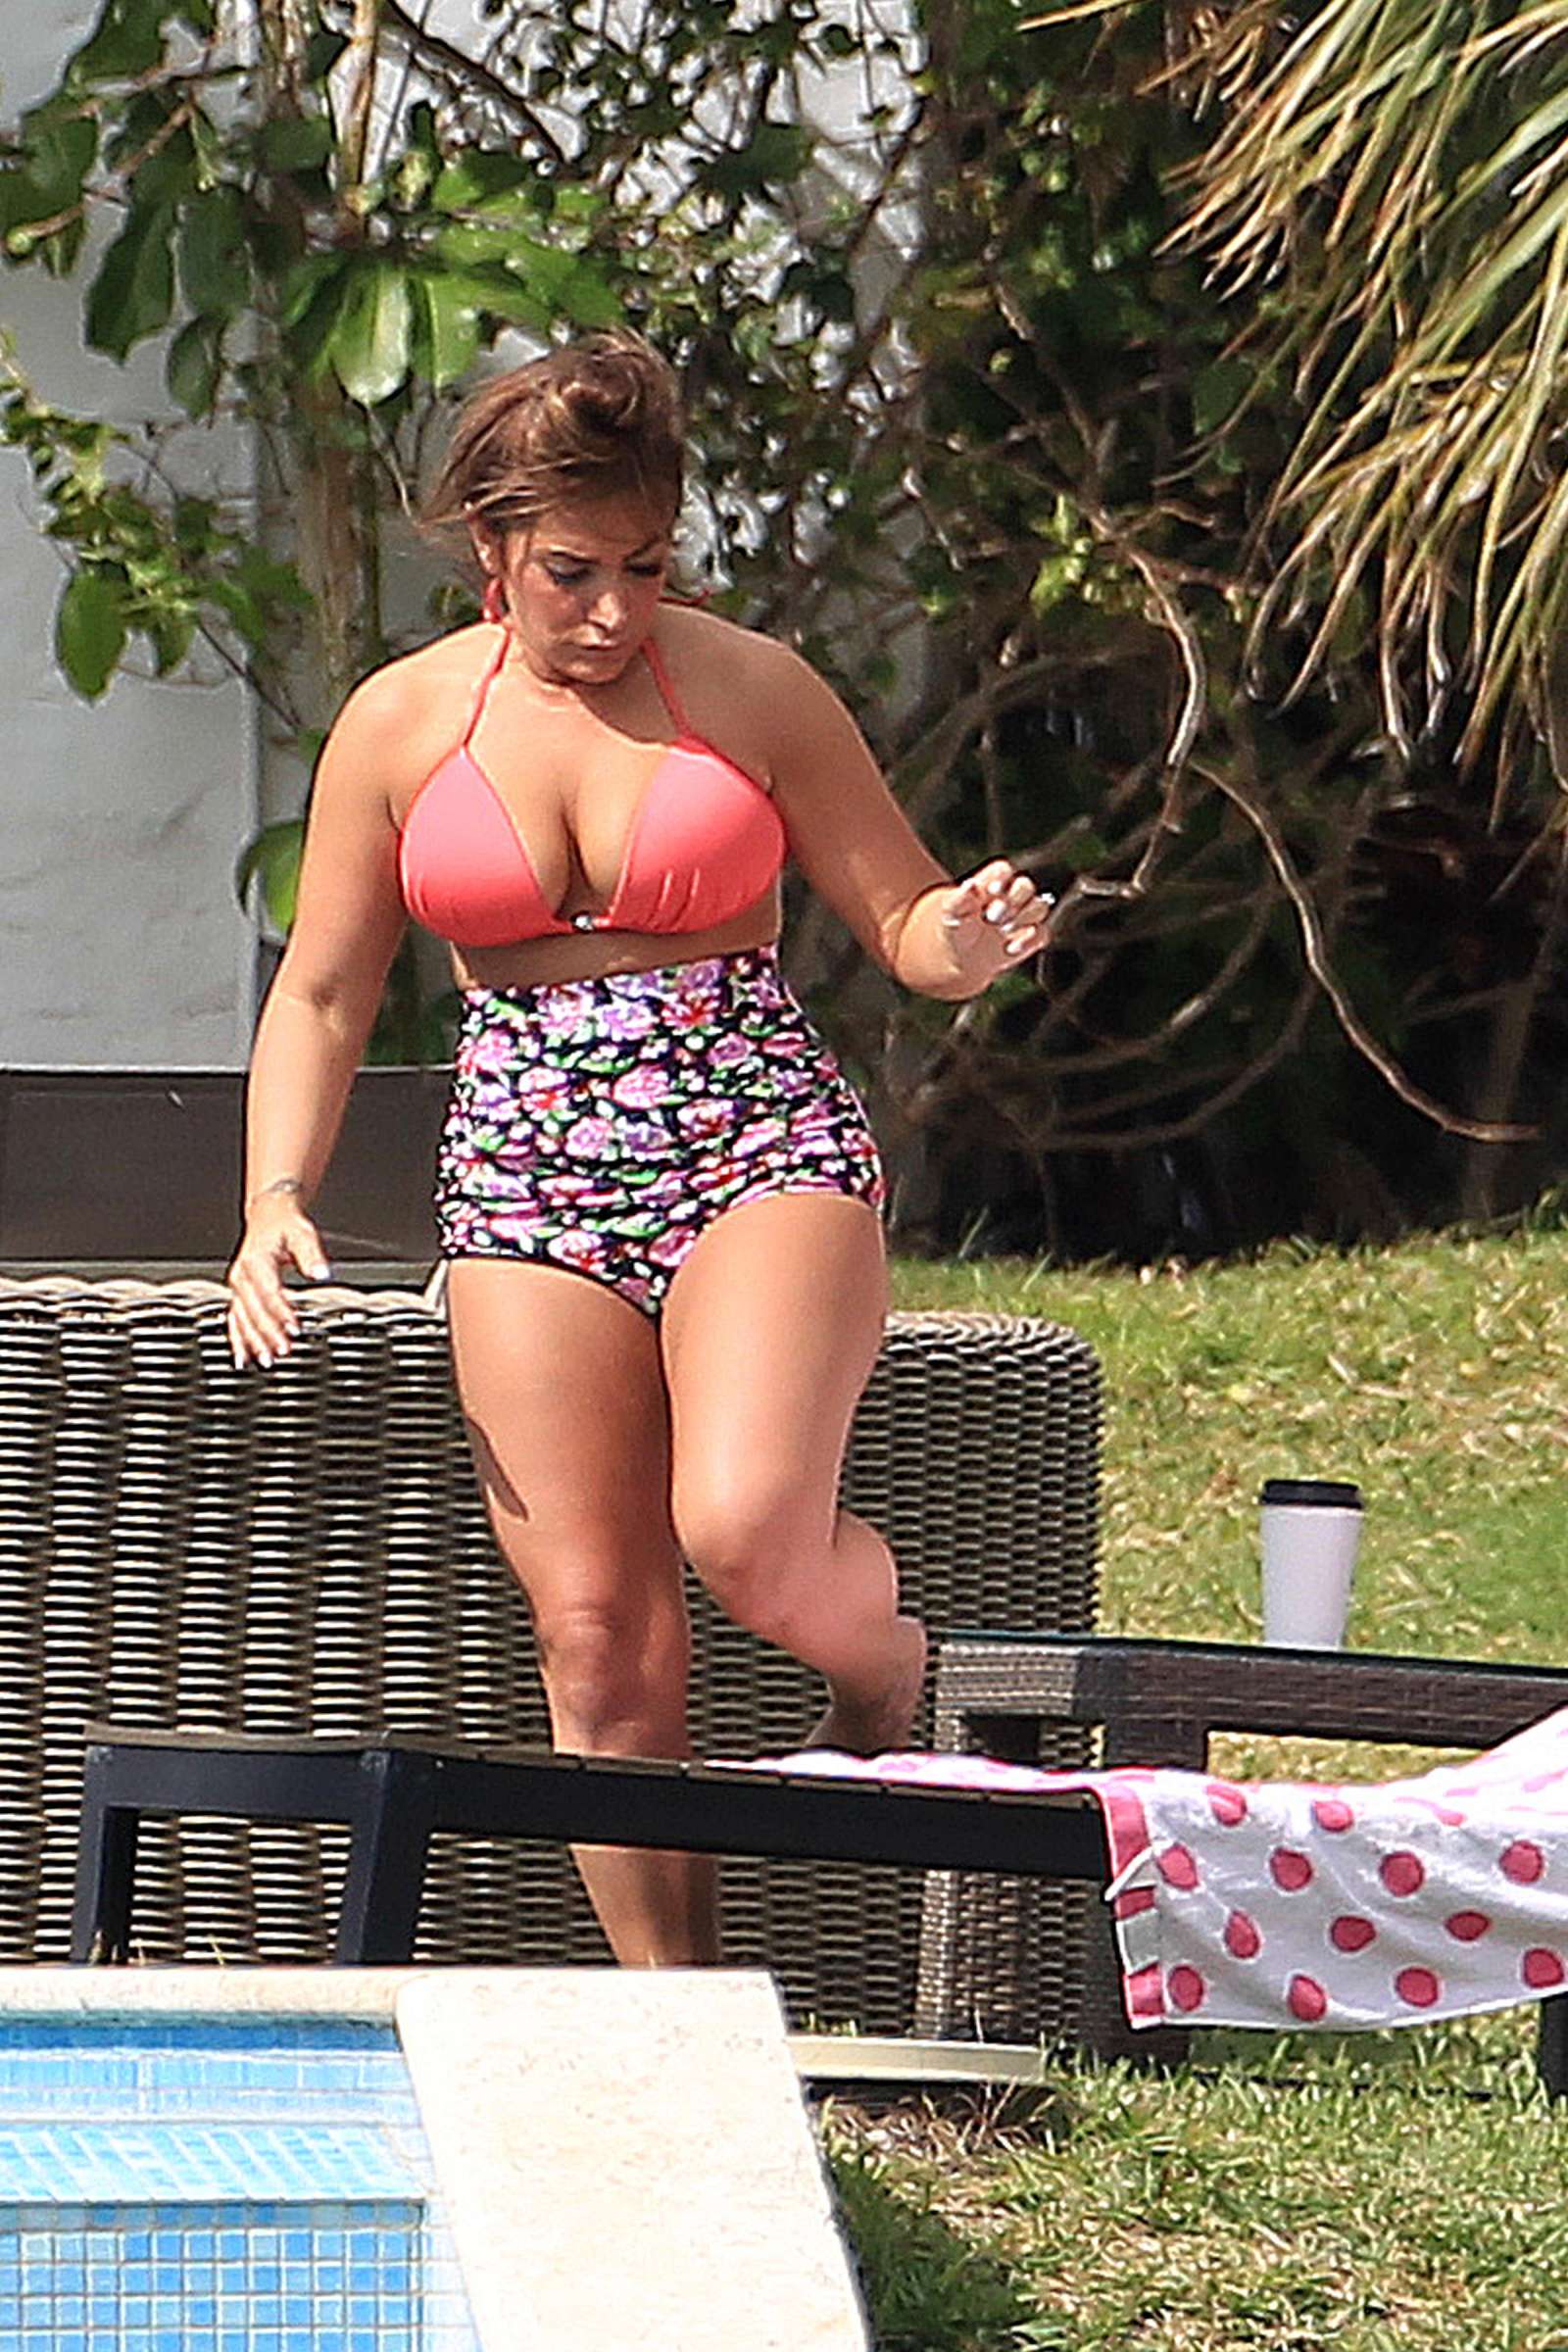 Deena Cortese in Bikini at the pool in Miami. 